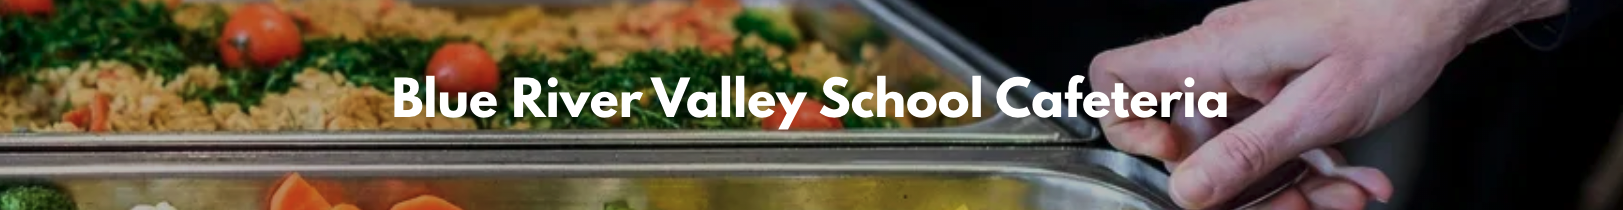 Blue River Valley School Cafeteria